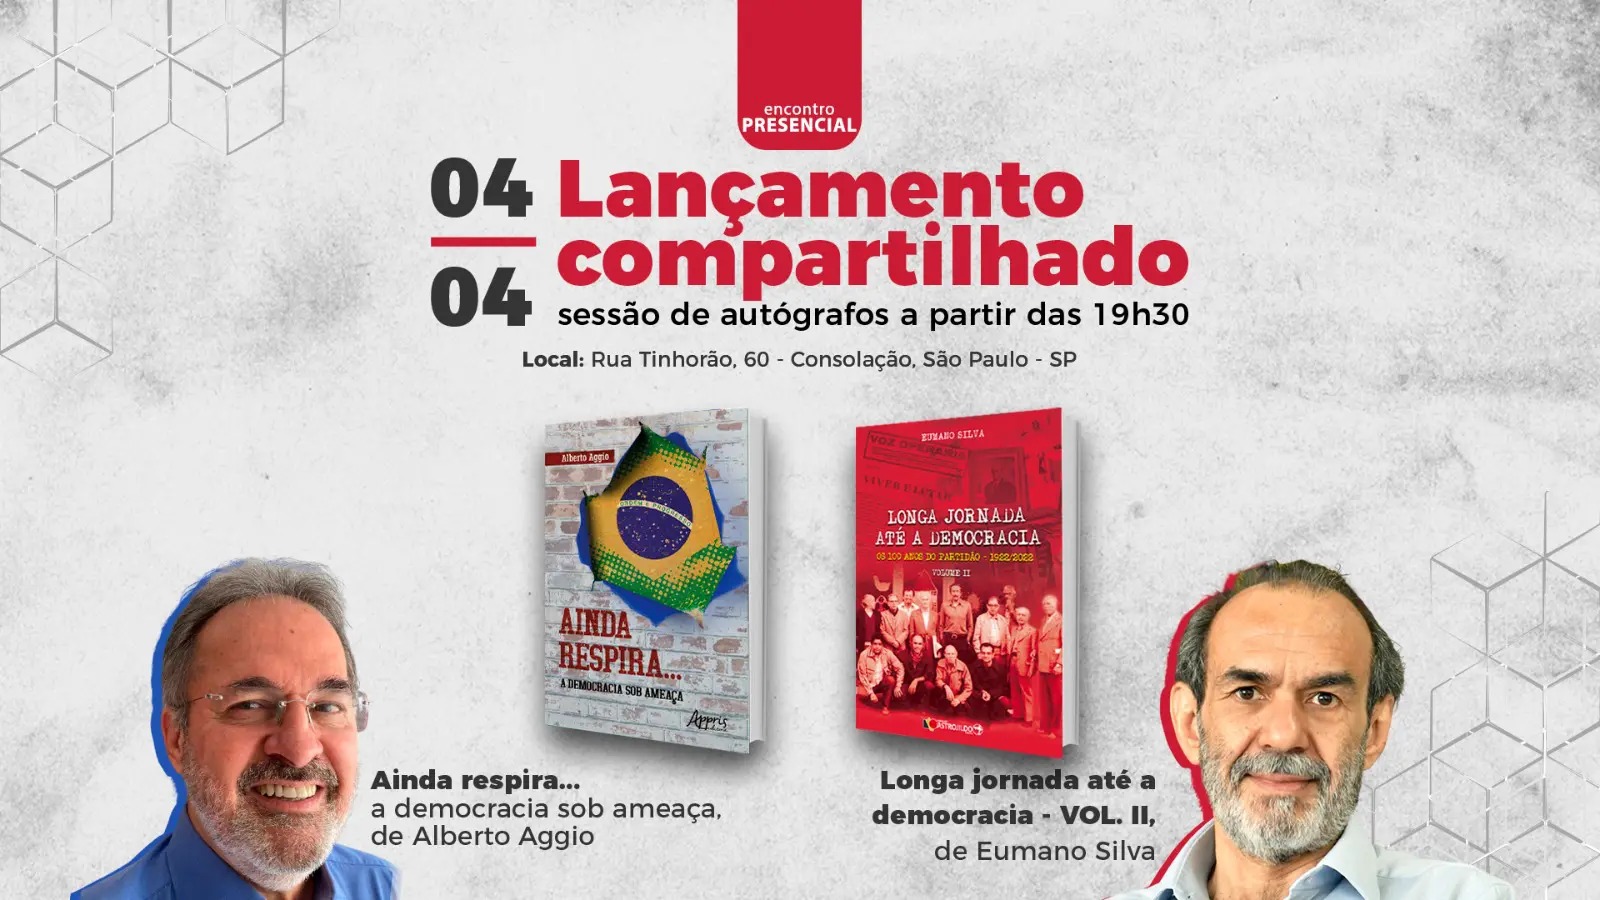 Eumano Silva lana ''Longa Jornada at a Democracia'' dia 4 de abril, em So Paulo